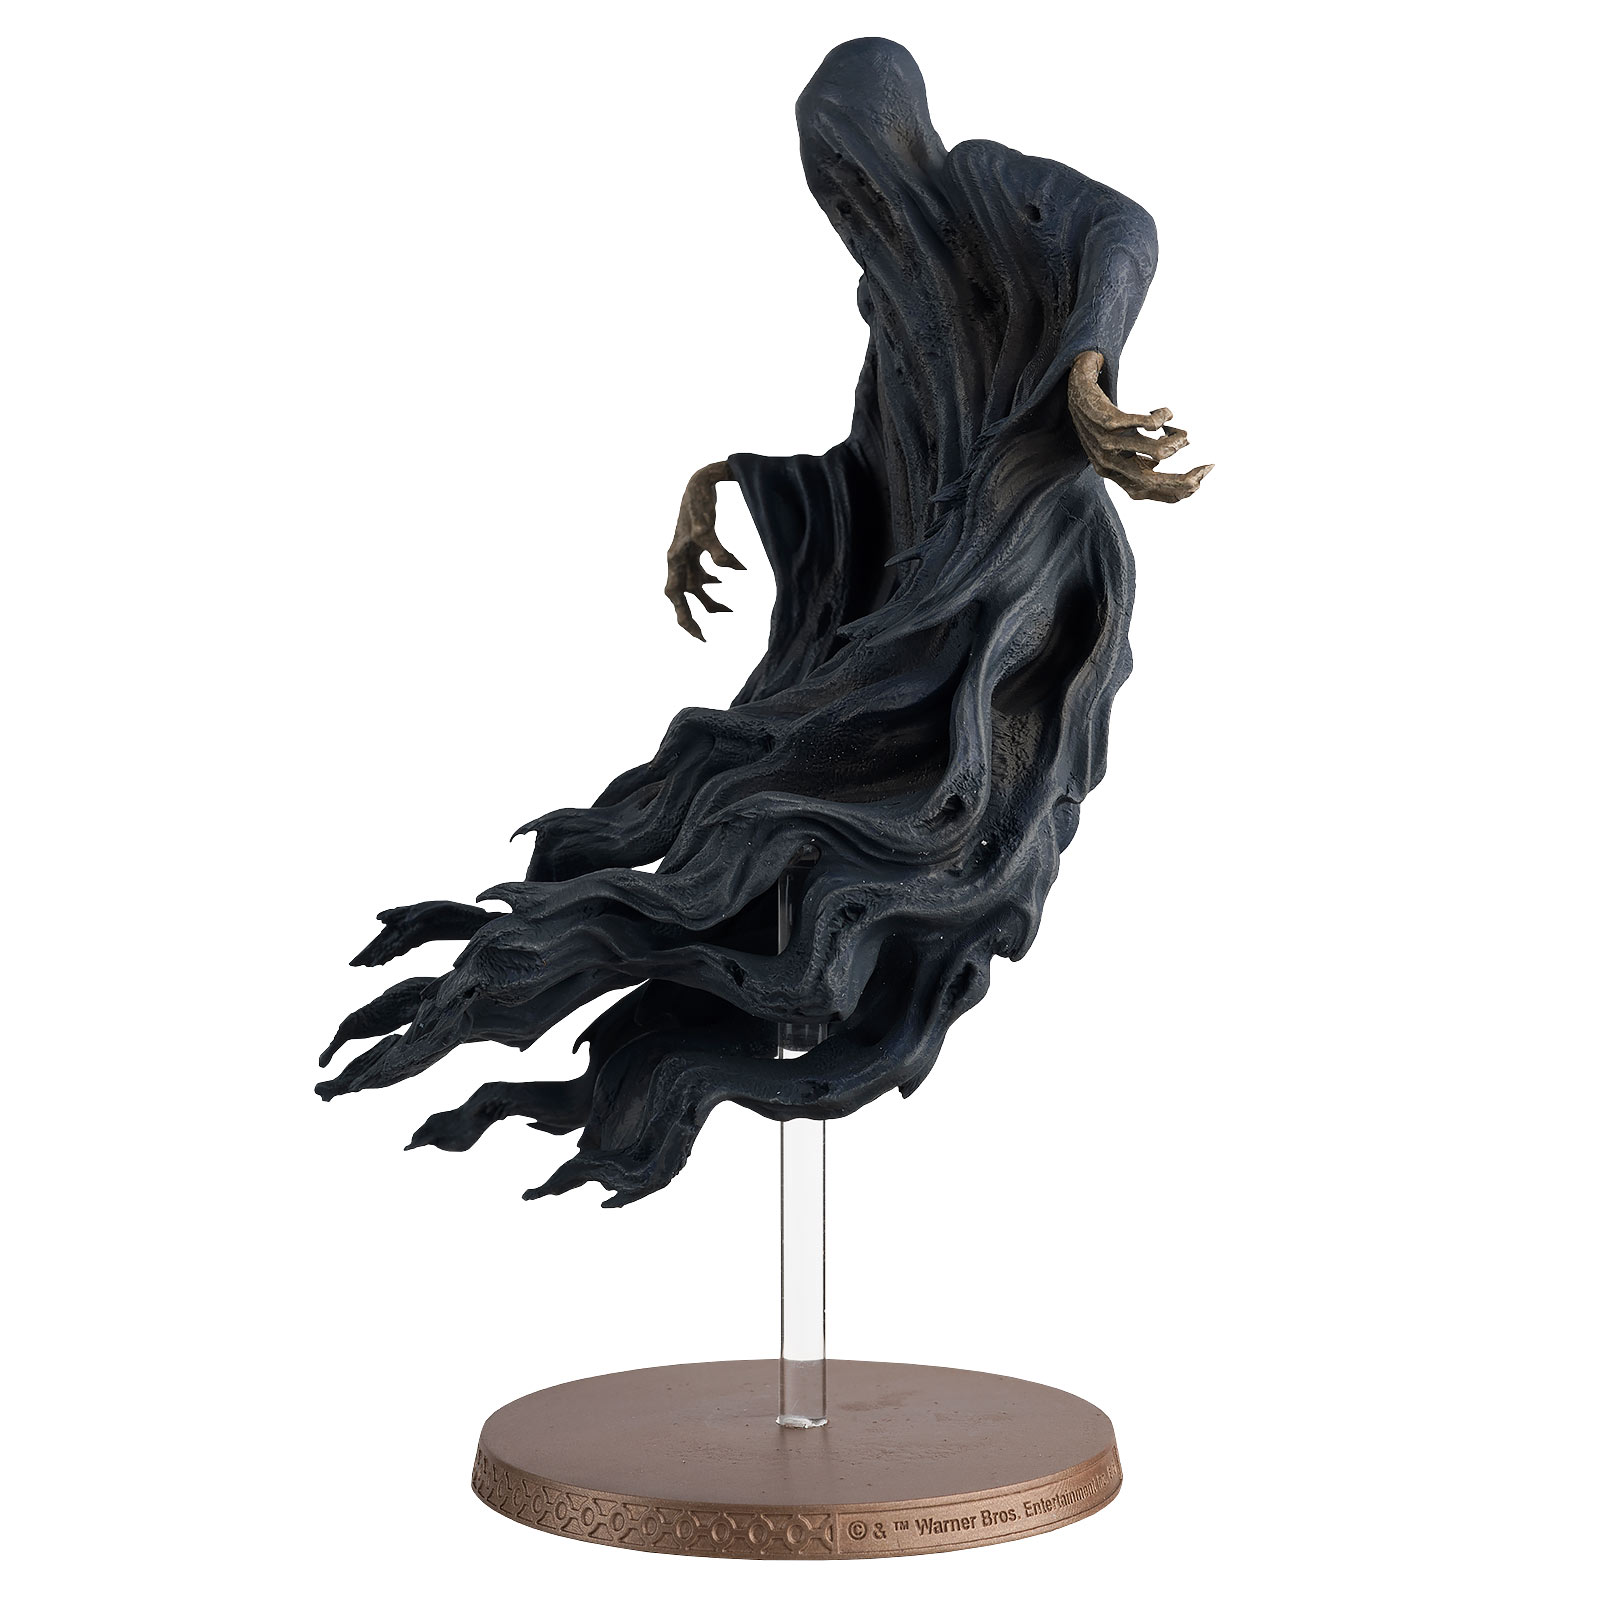 Dementor Hero Collector Figure 13 cm - Harry Potter